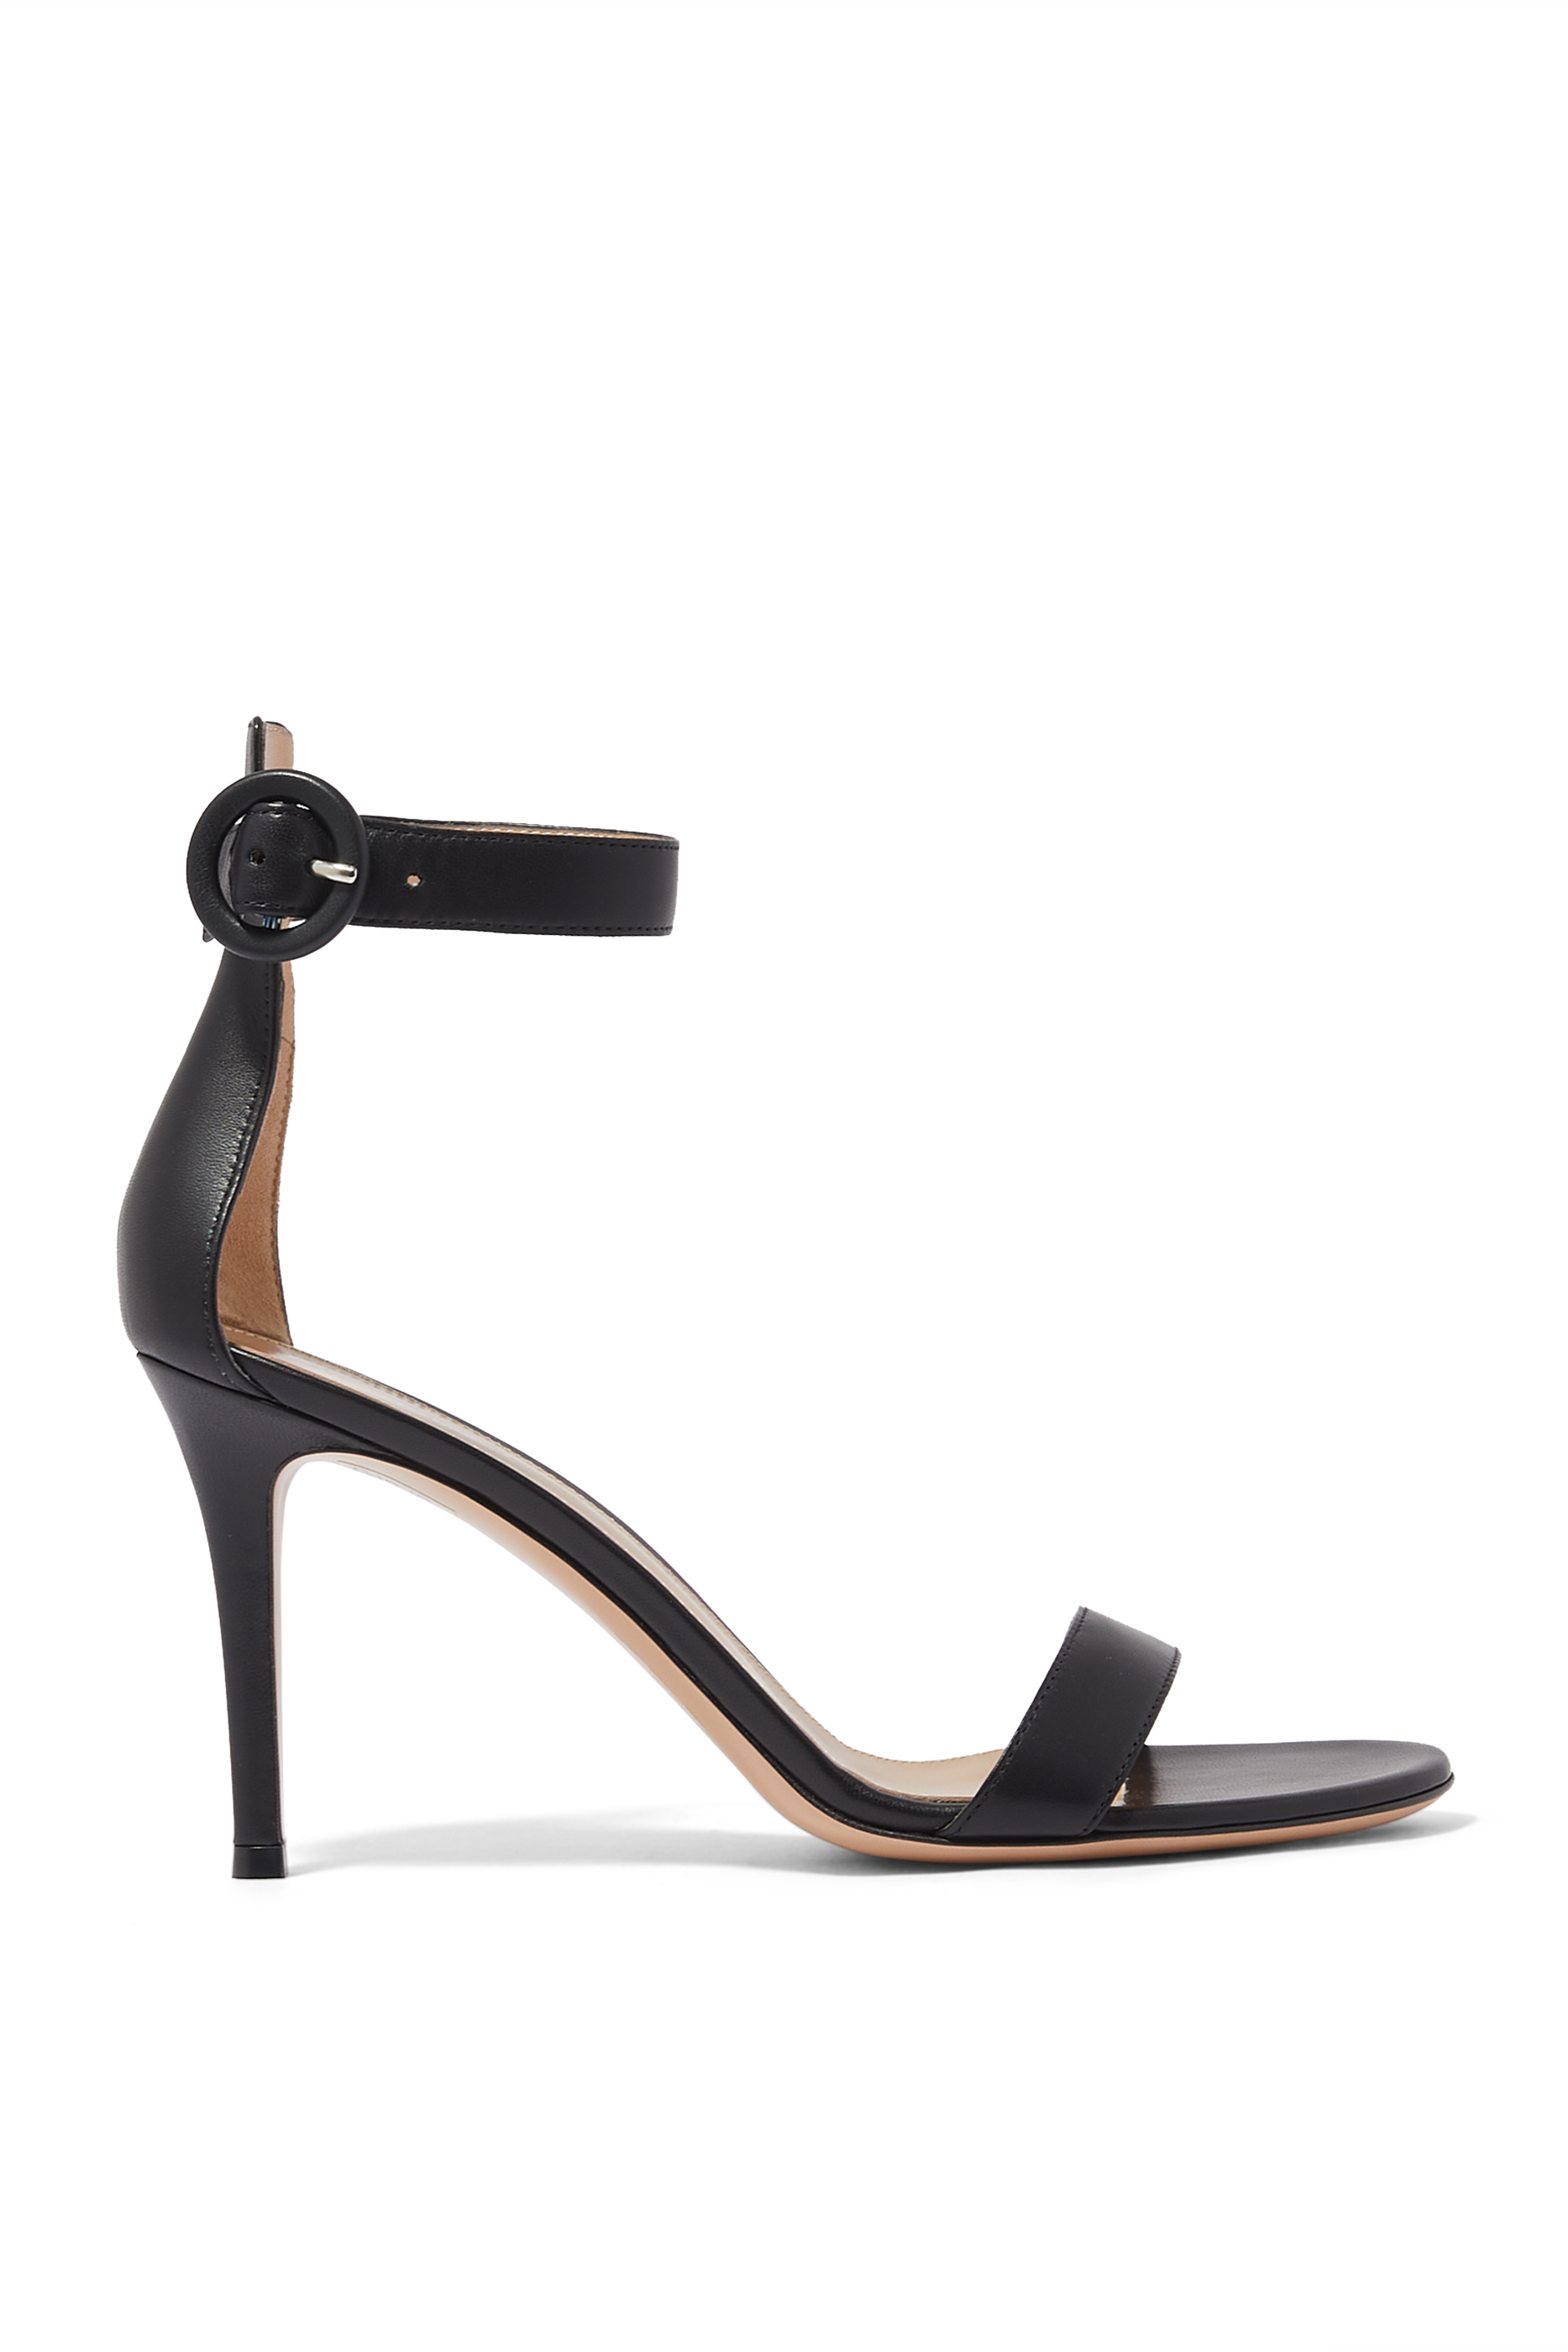 Buy Gianvito Rossi Portofino Nappa 85 Sandals for Womens | Bloomingdale ...